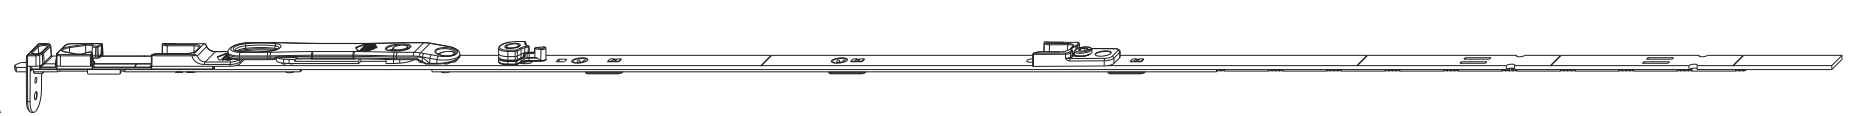 MAICO -  Catenaccio MULTI-MATIC a leva altezza maniglia fissa per canalino - gruppo 2200 - hbb/lbb 1951-2200 - altezza maniglia 1050